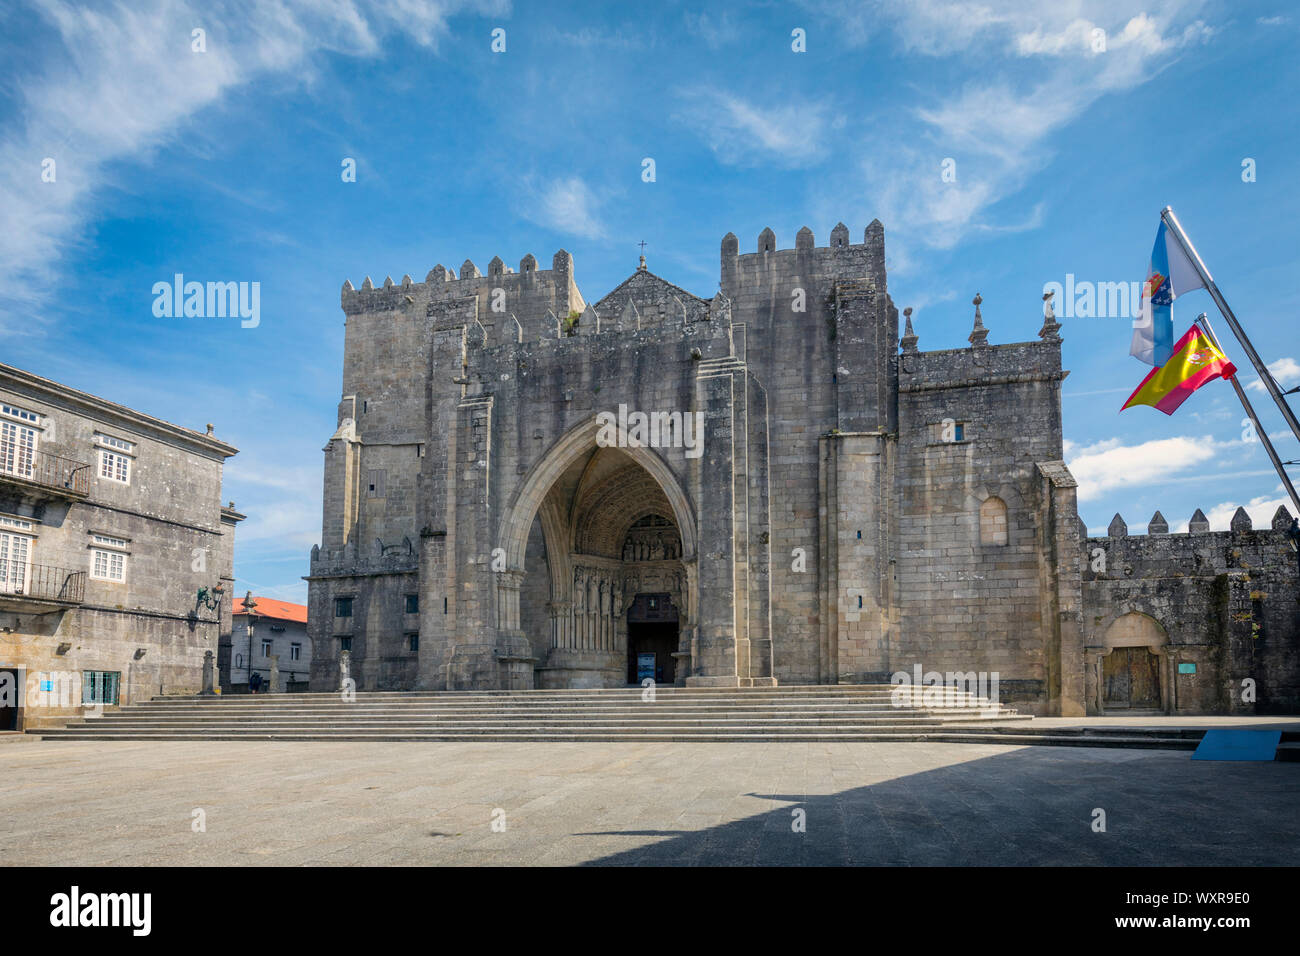 La Cathédrale romano-gothique de Santa Maria, construite pendant le 11ème-13ème siècles. Cathédrale St Mary. Tui, province de Pontevedra, Galice, Espagne Banque D'Images